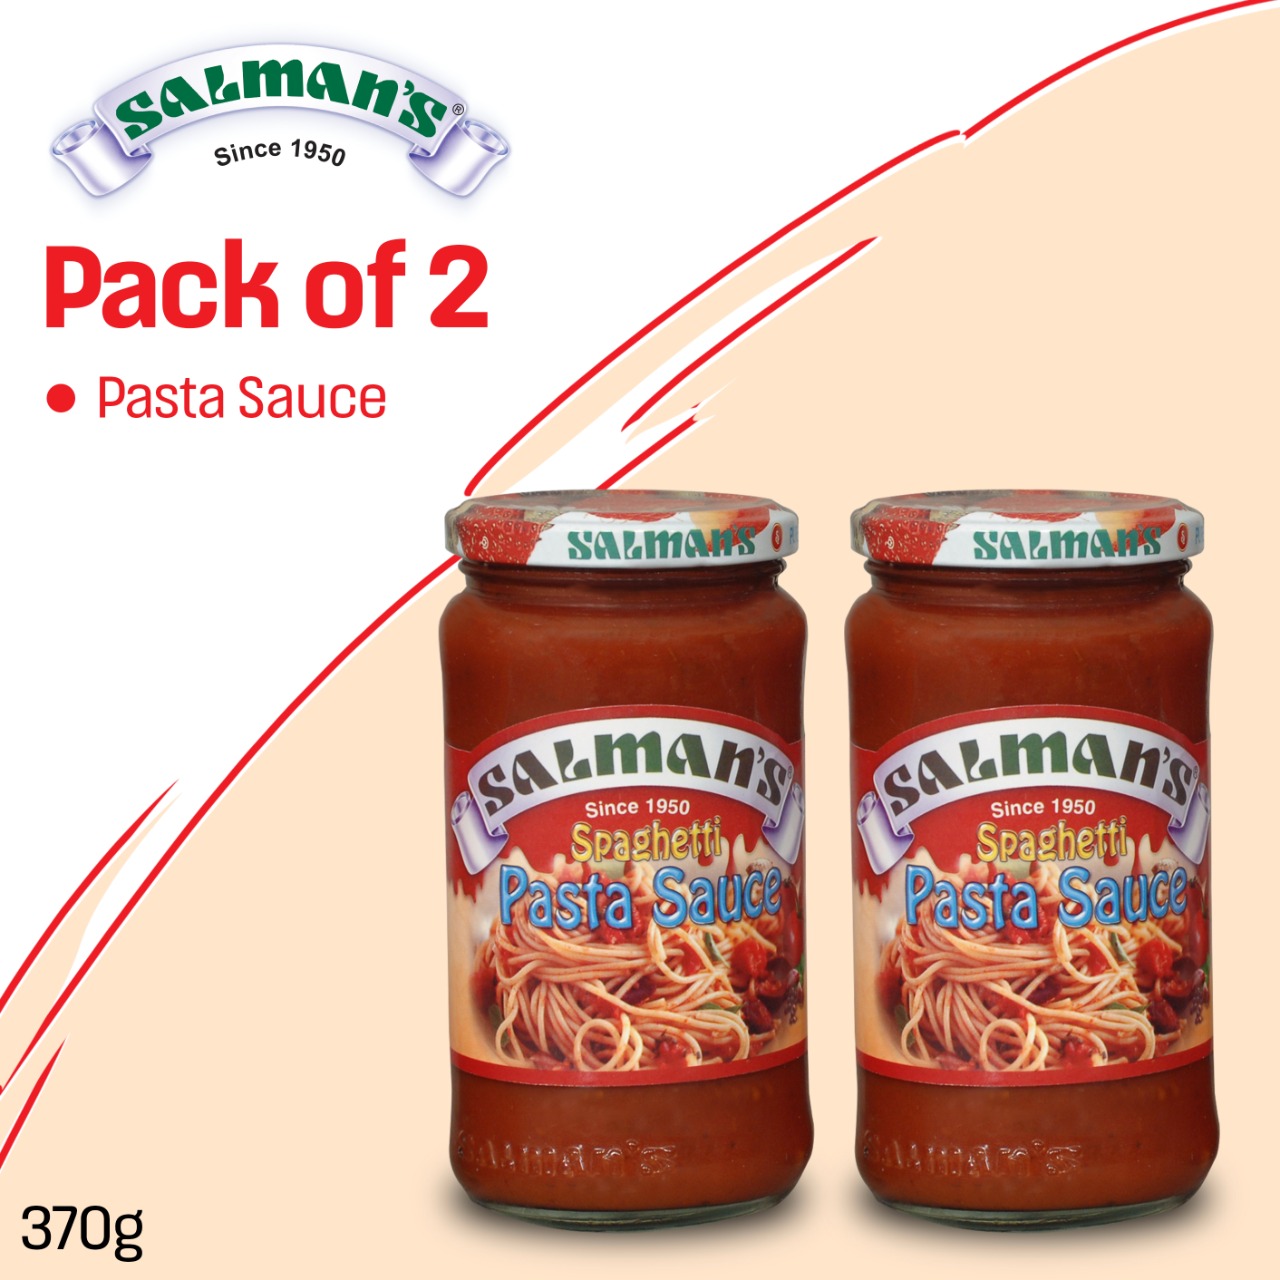 Salmans Spaghetti Pasta Sauce 370g